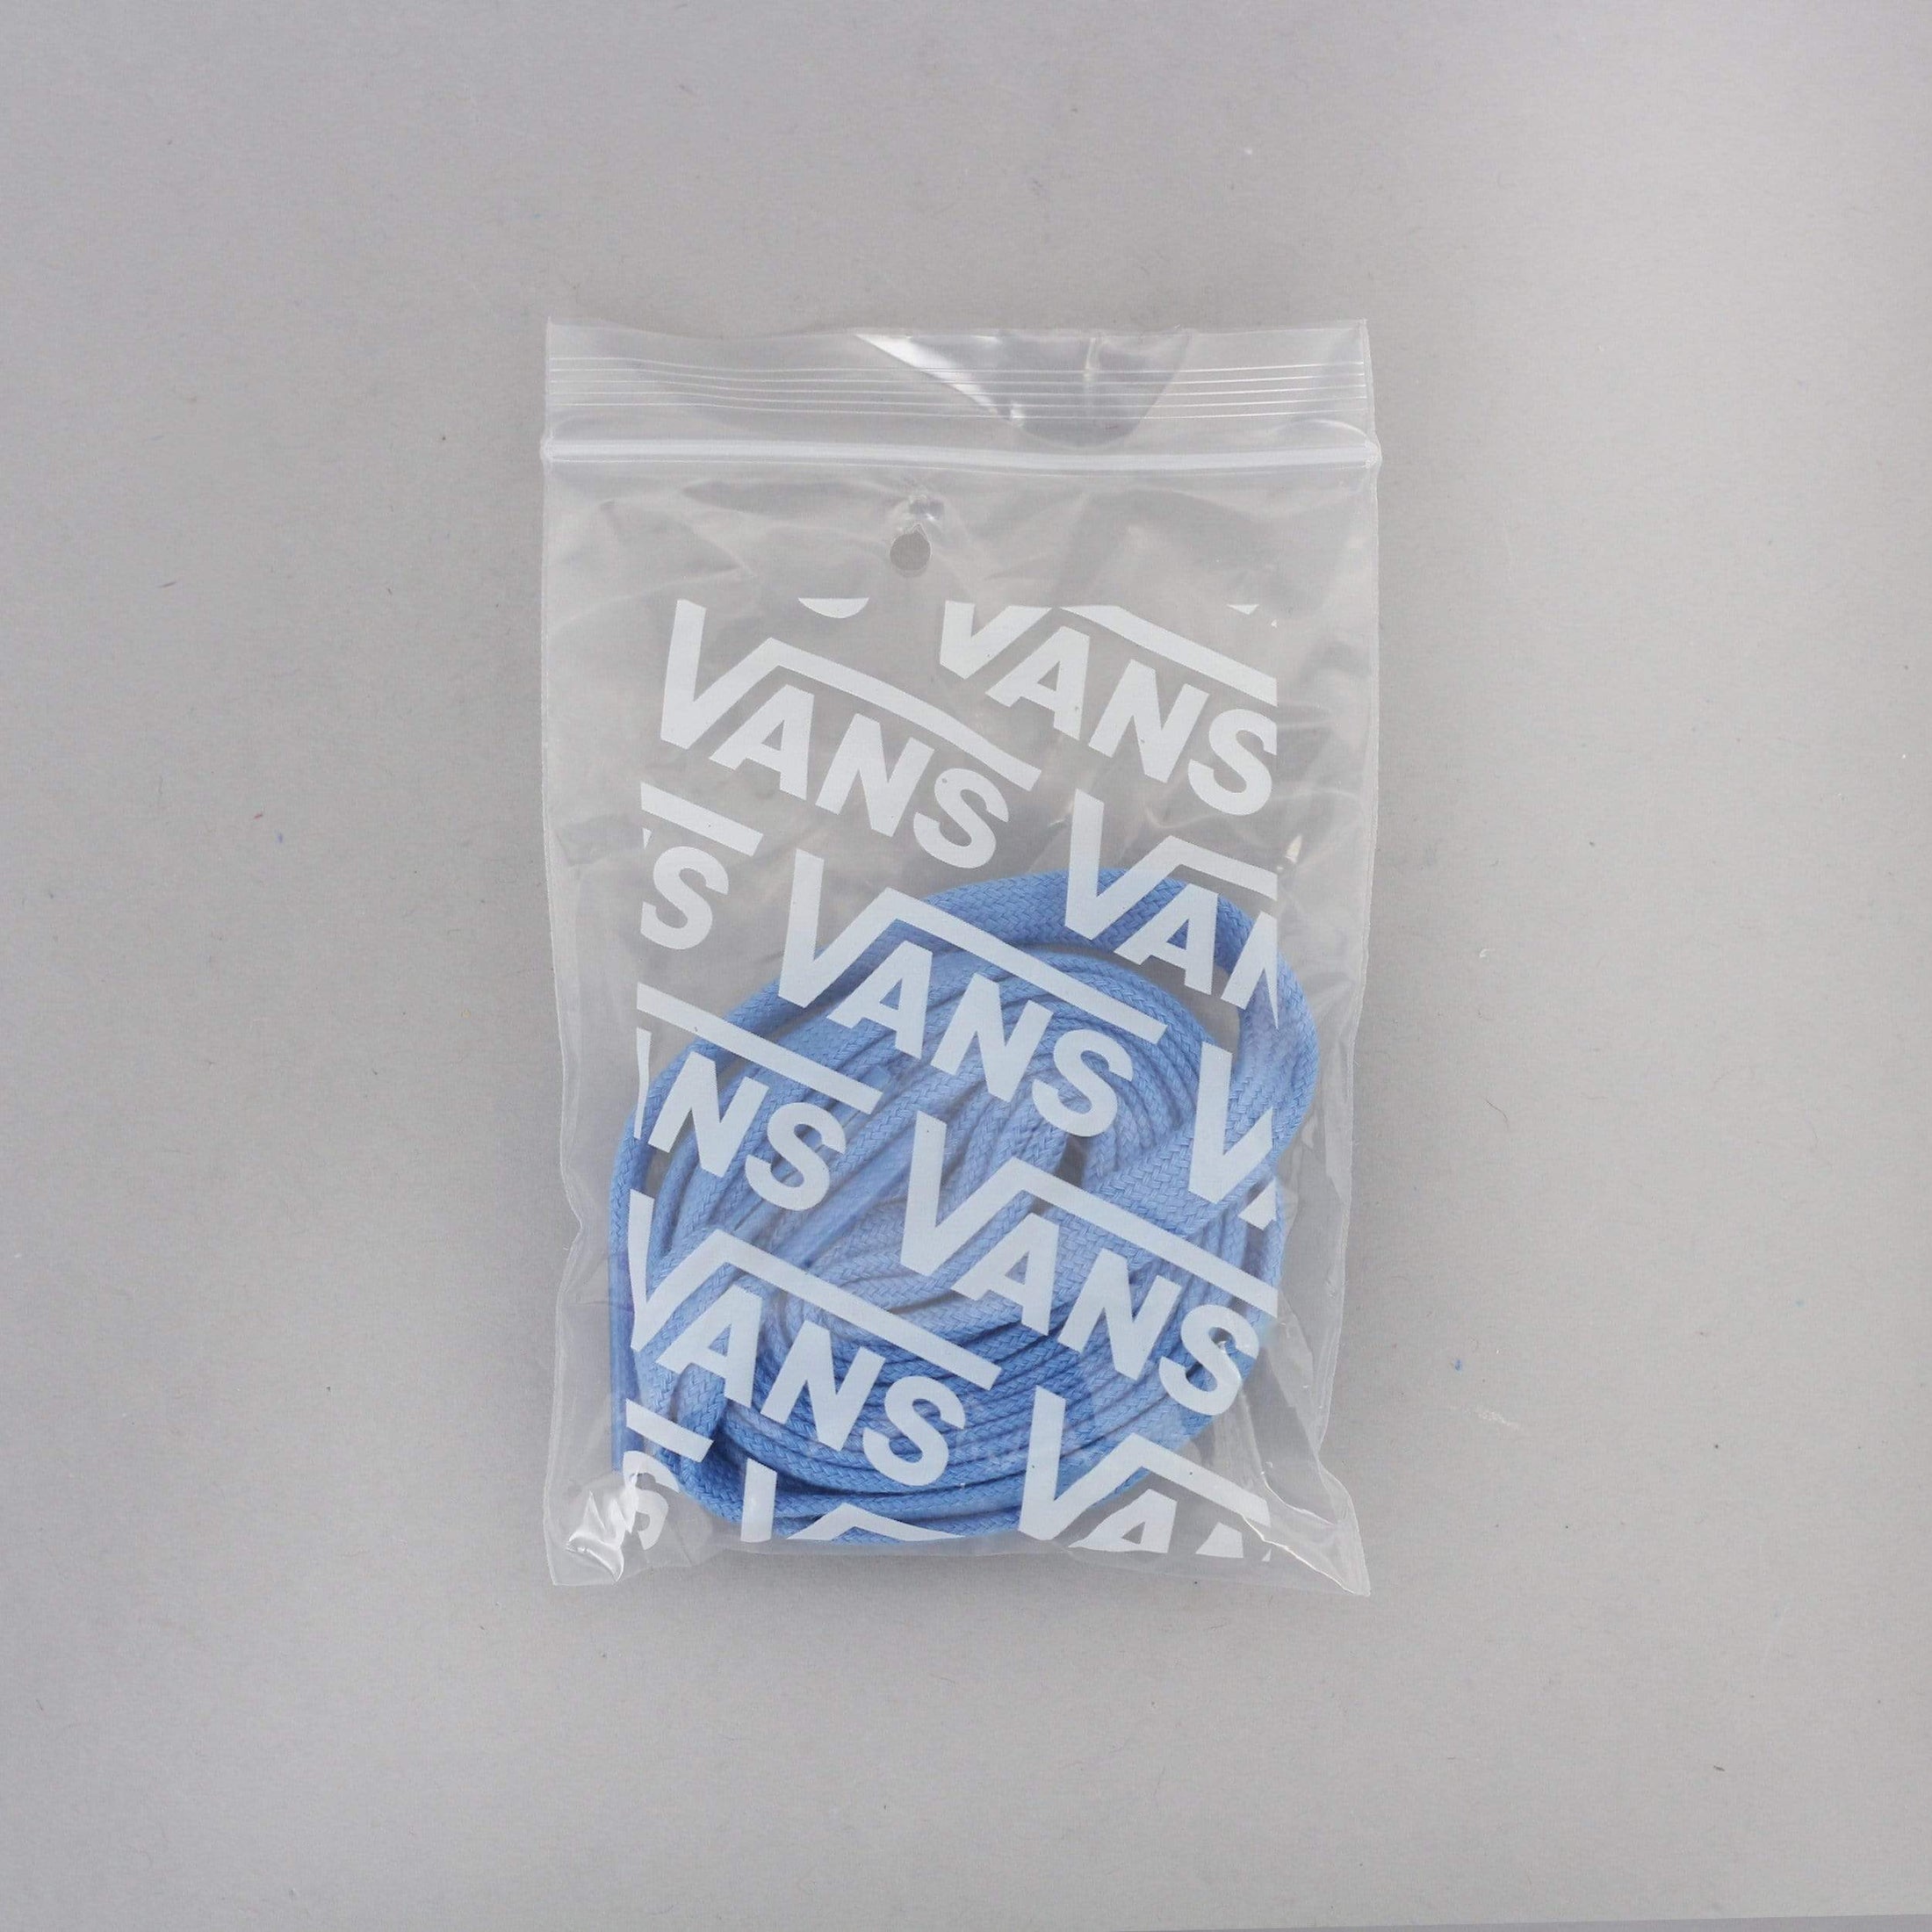 Vans Half Cab Pro Ltd Shoes (Dime) Blue / Marshmallow